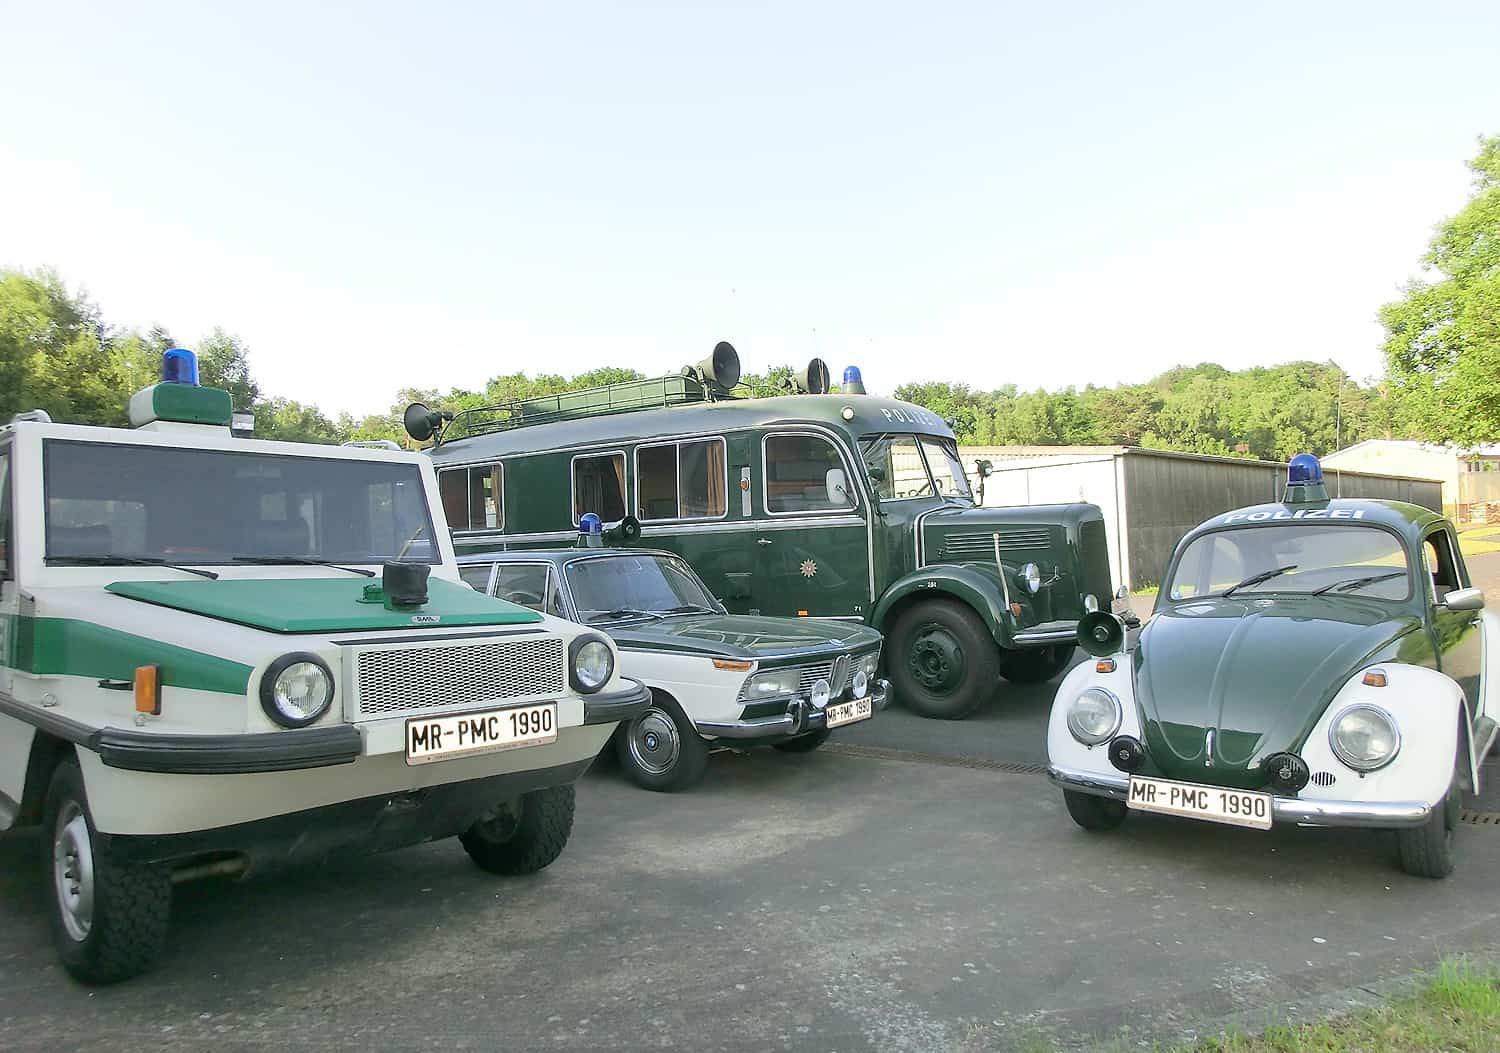 Außergewöhnliche Fahrzeuge gibt es im Polizeioldtimer Museum zu sehen, wie z. B. der Amphi-Ranger (links), ein Amphibienfahrzeug aus dem Jahr 1983, das zuletzt auf dem Edersee eingesetzt war, daneben der BMW 2000, Mercedes-Benz Fernmeldebetriebsbus und der VW Käfer